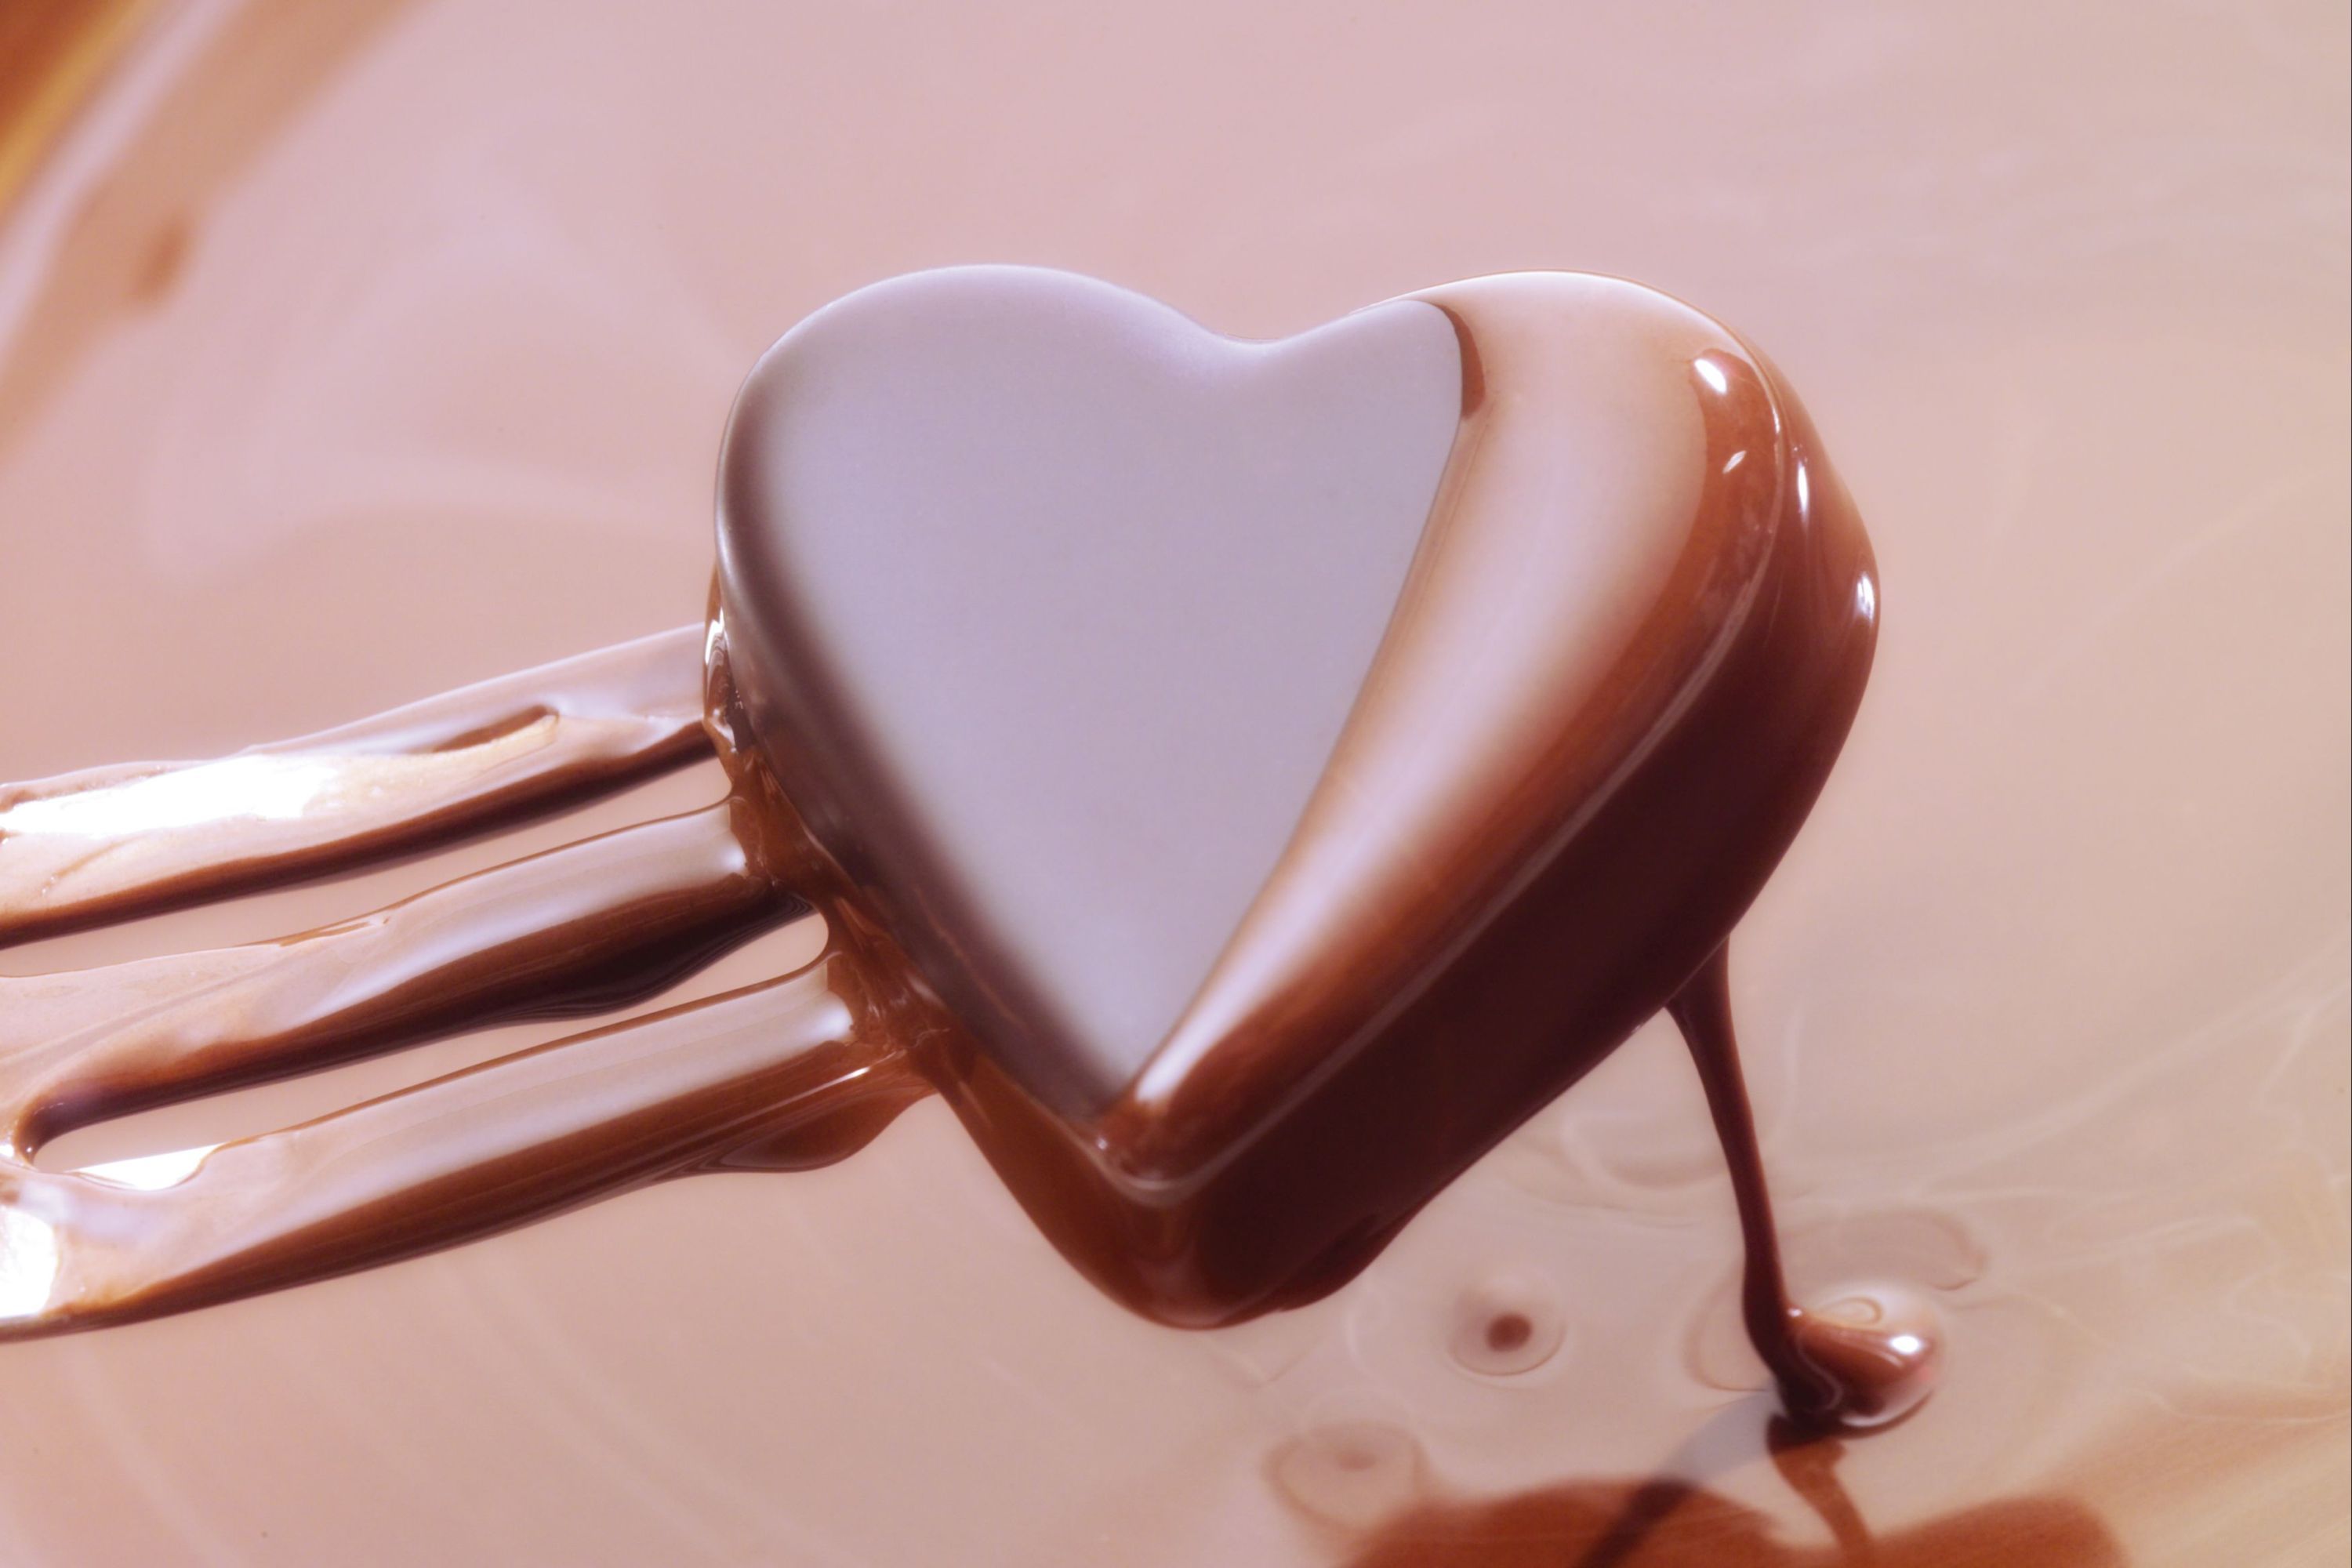 Bộ hình nền Chocolate ngọt ngào nhất cho những người hảo ngọt